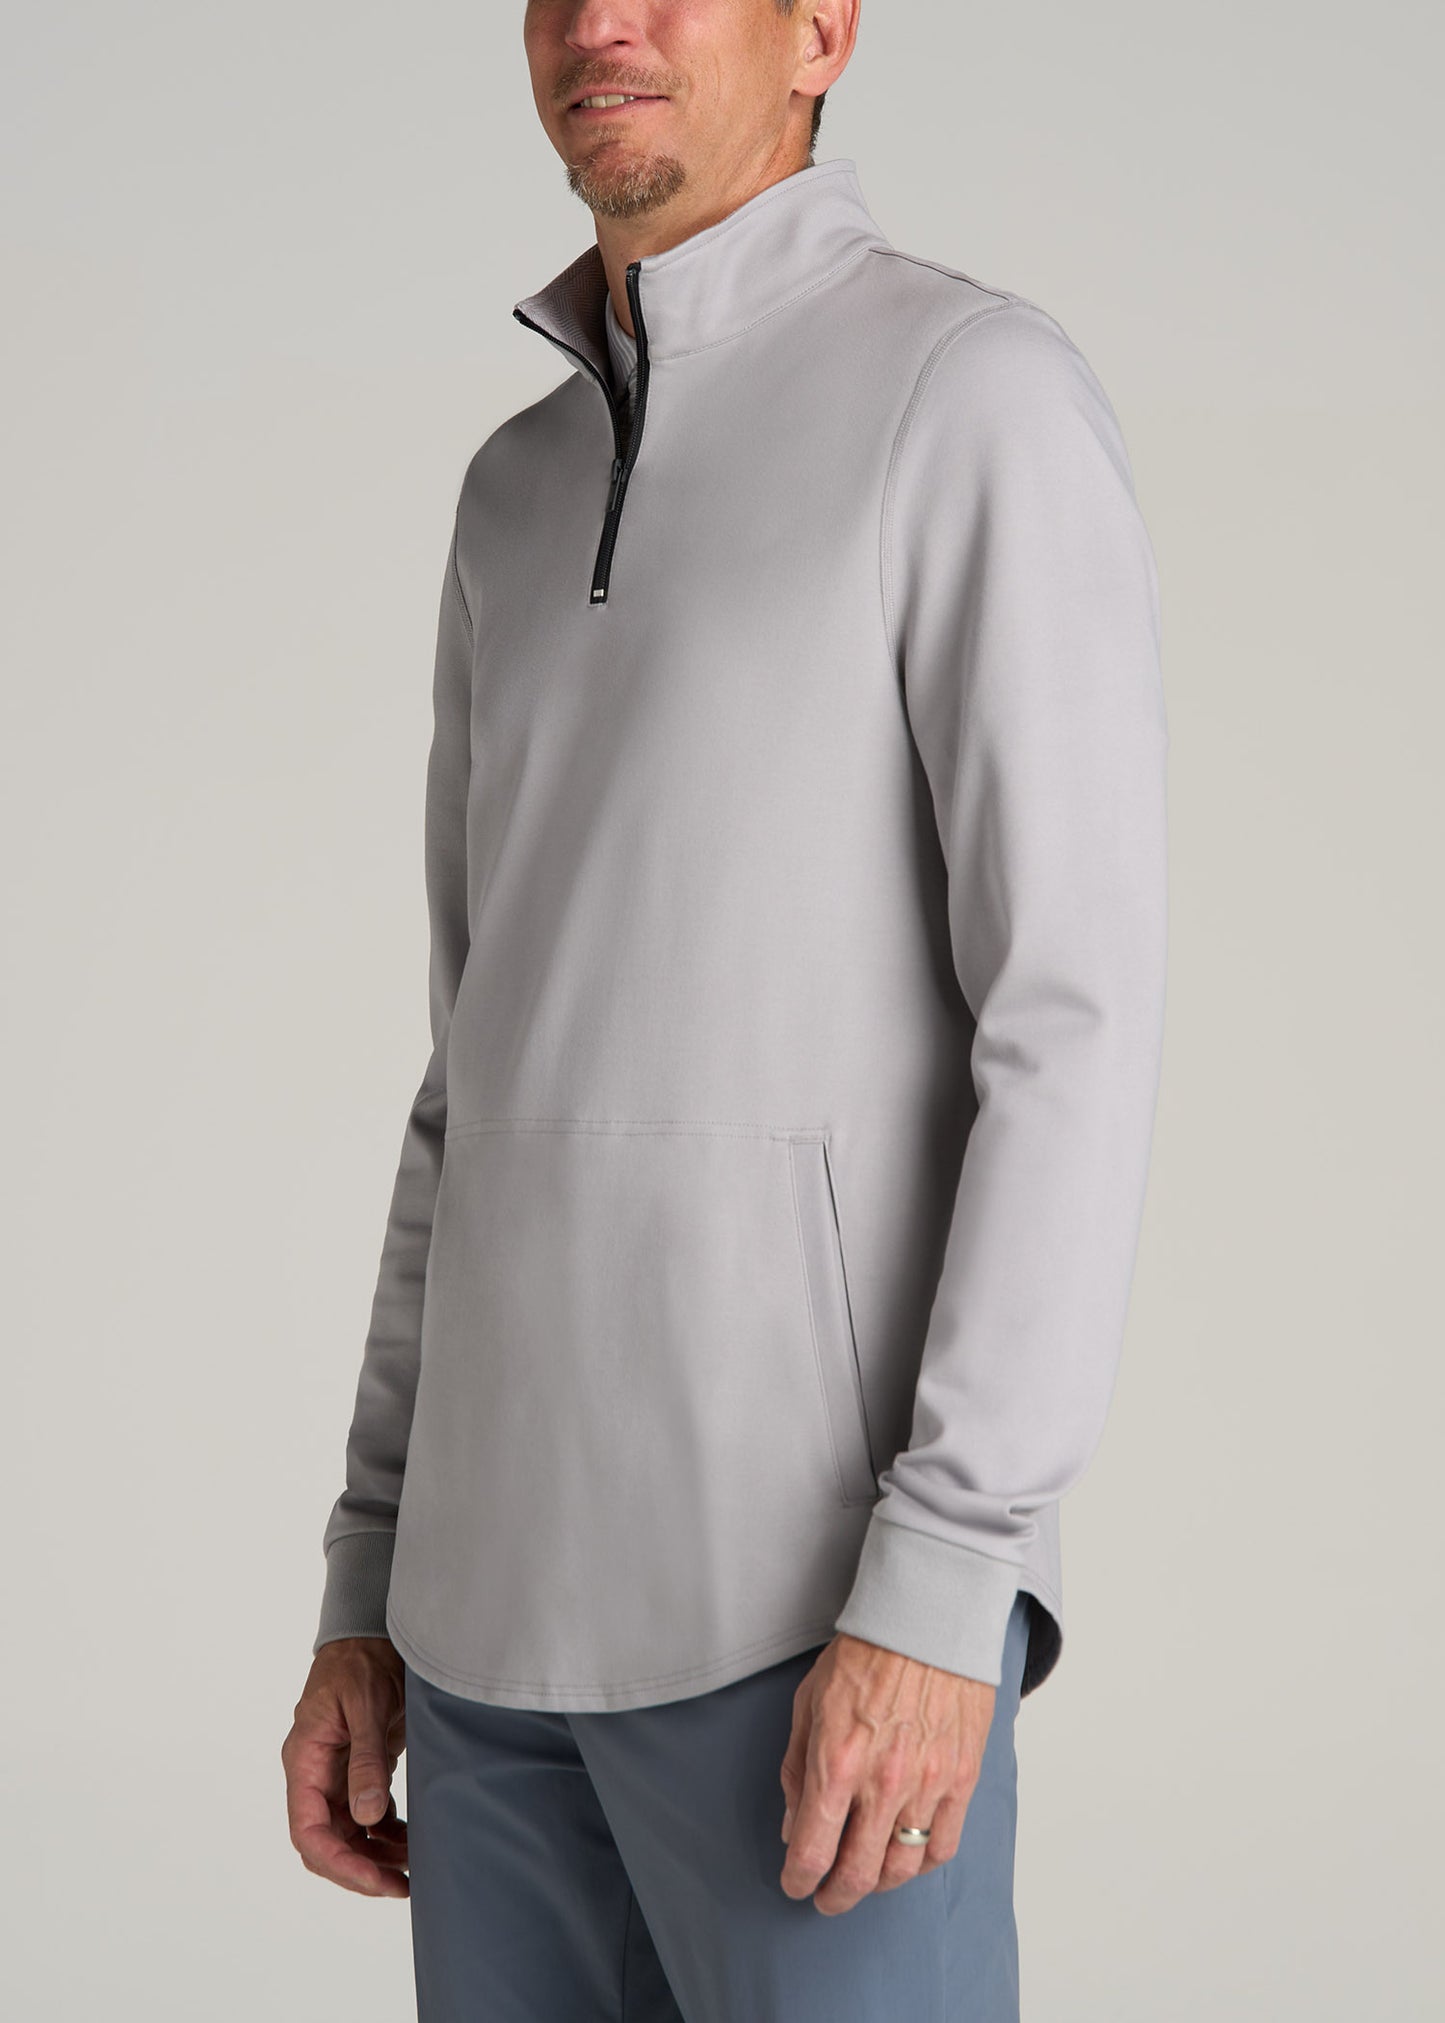 Fairway Popover Tall Men's Sweatshirt in Light Grey